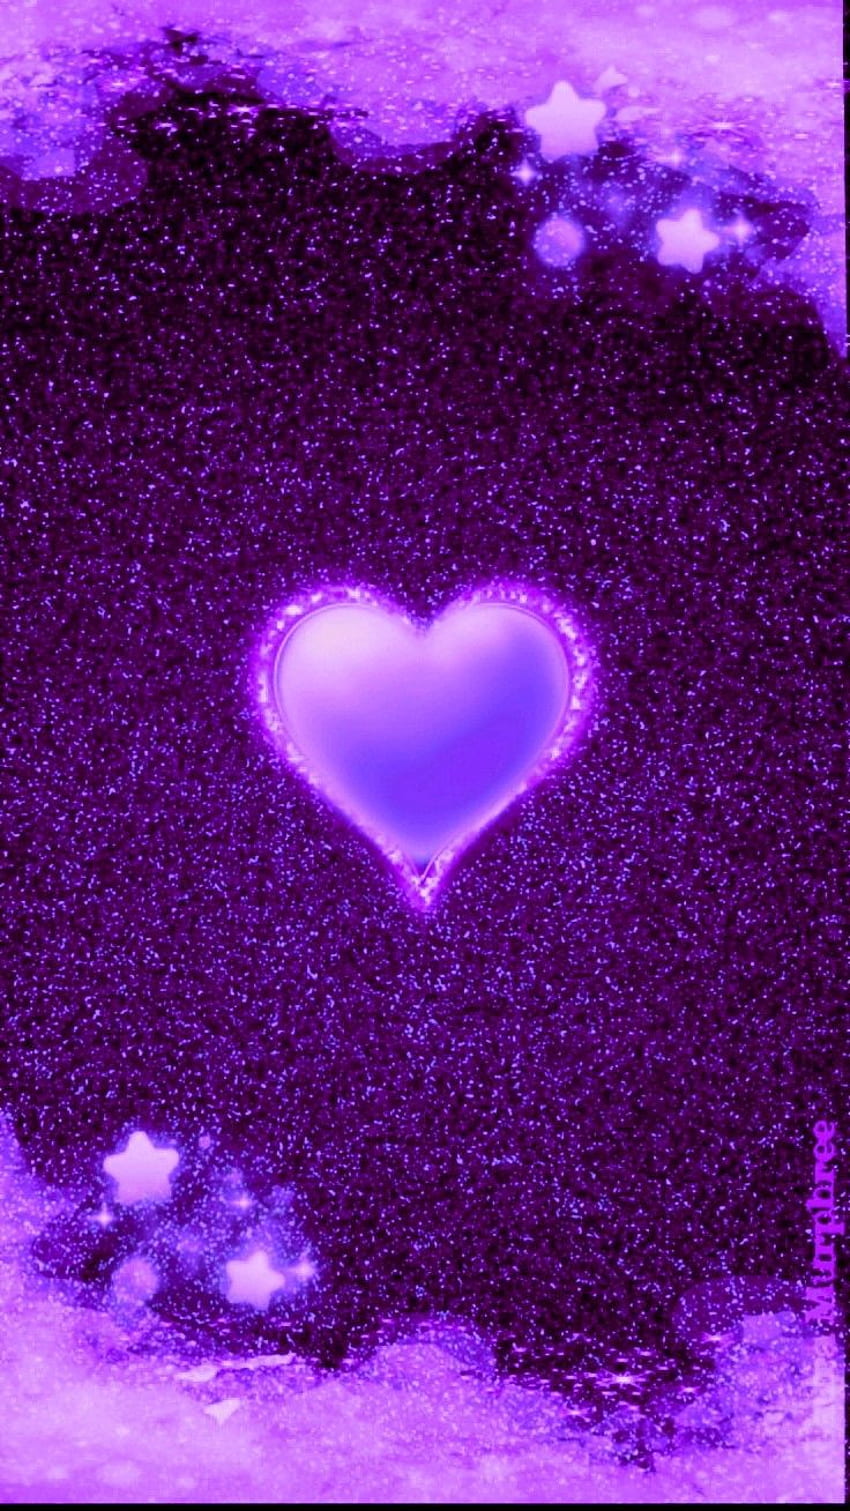 https://e0.pxfuel.com/wallpapers/391/1014/desktop-wallpaper-by-artist-unknown-heart-iphone-heart-love-purple-glitter-hearts.jpg